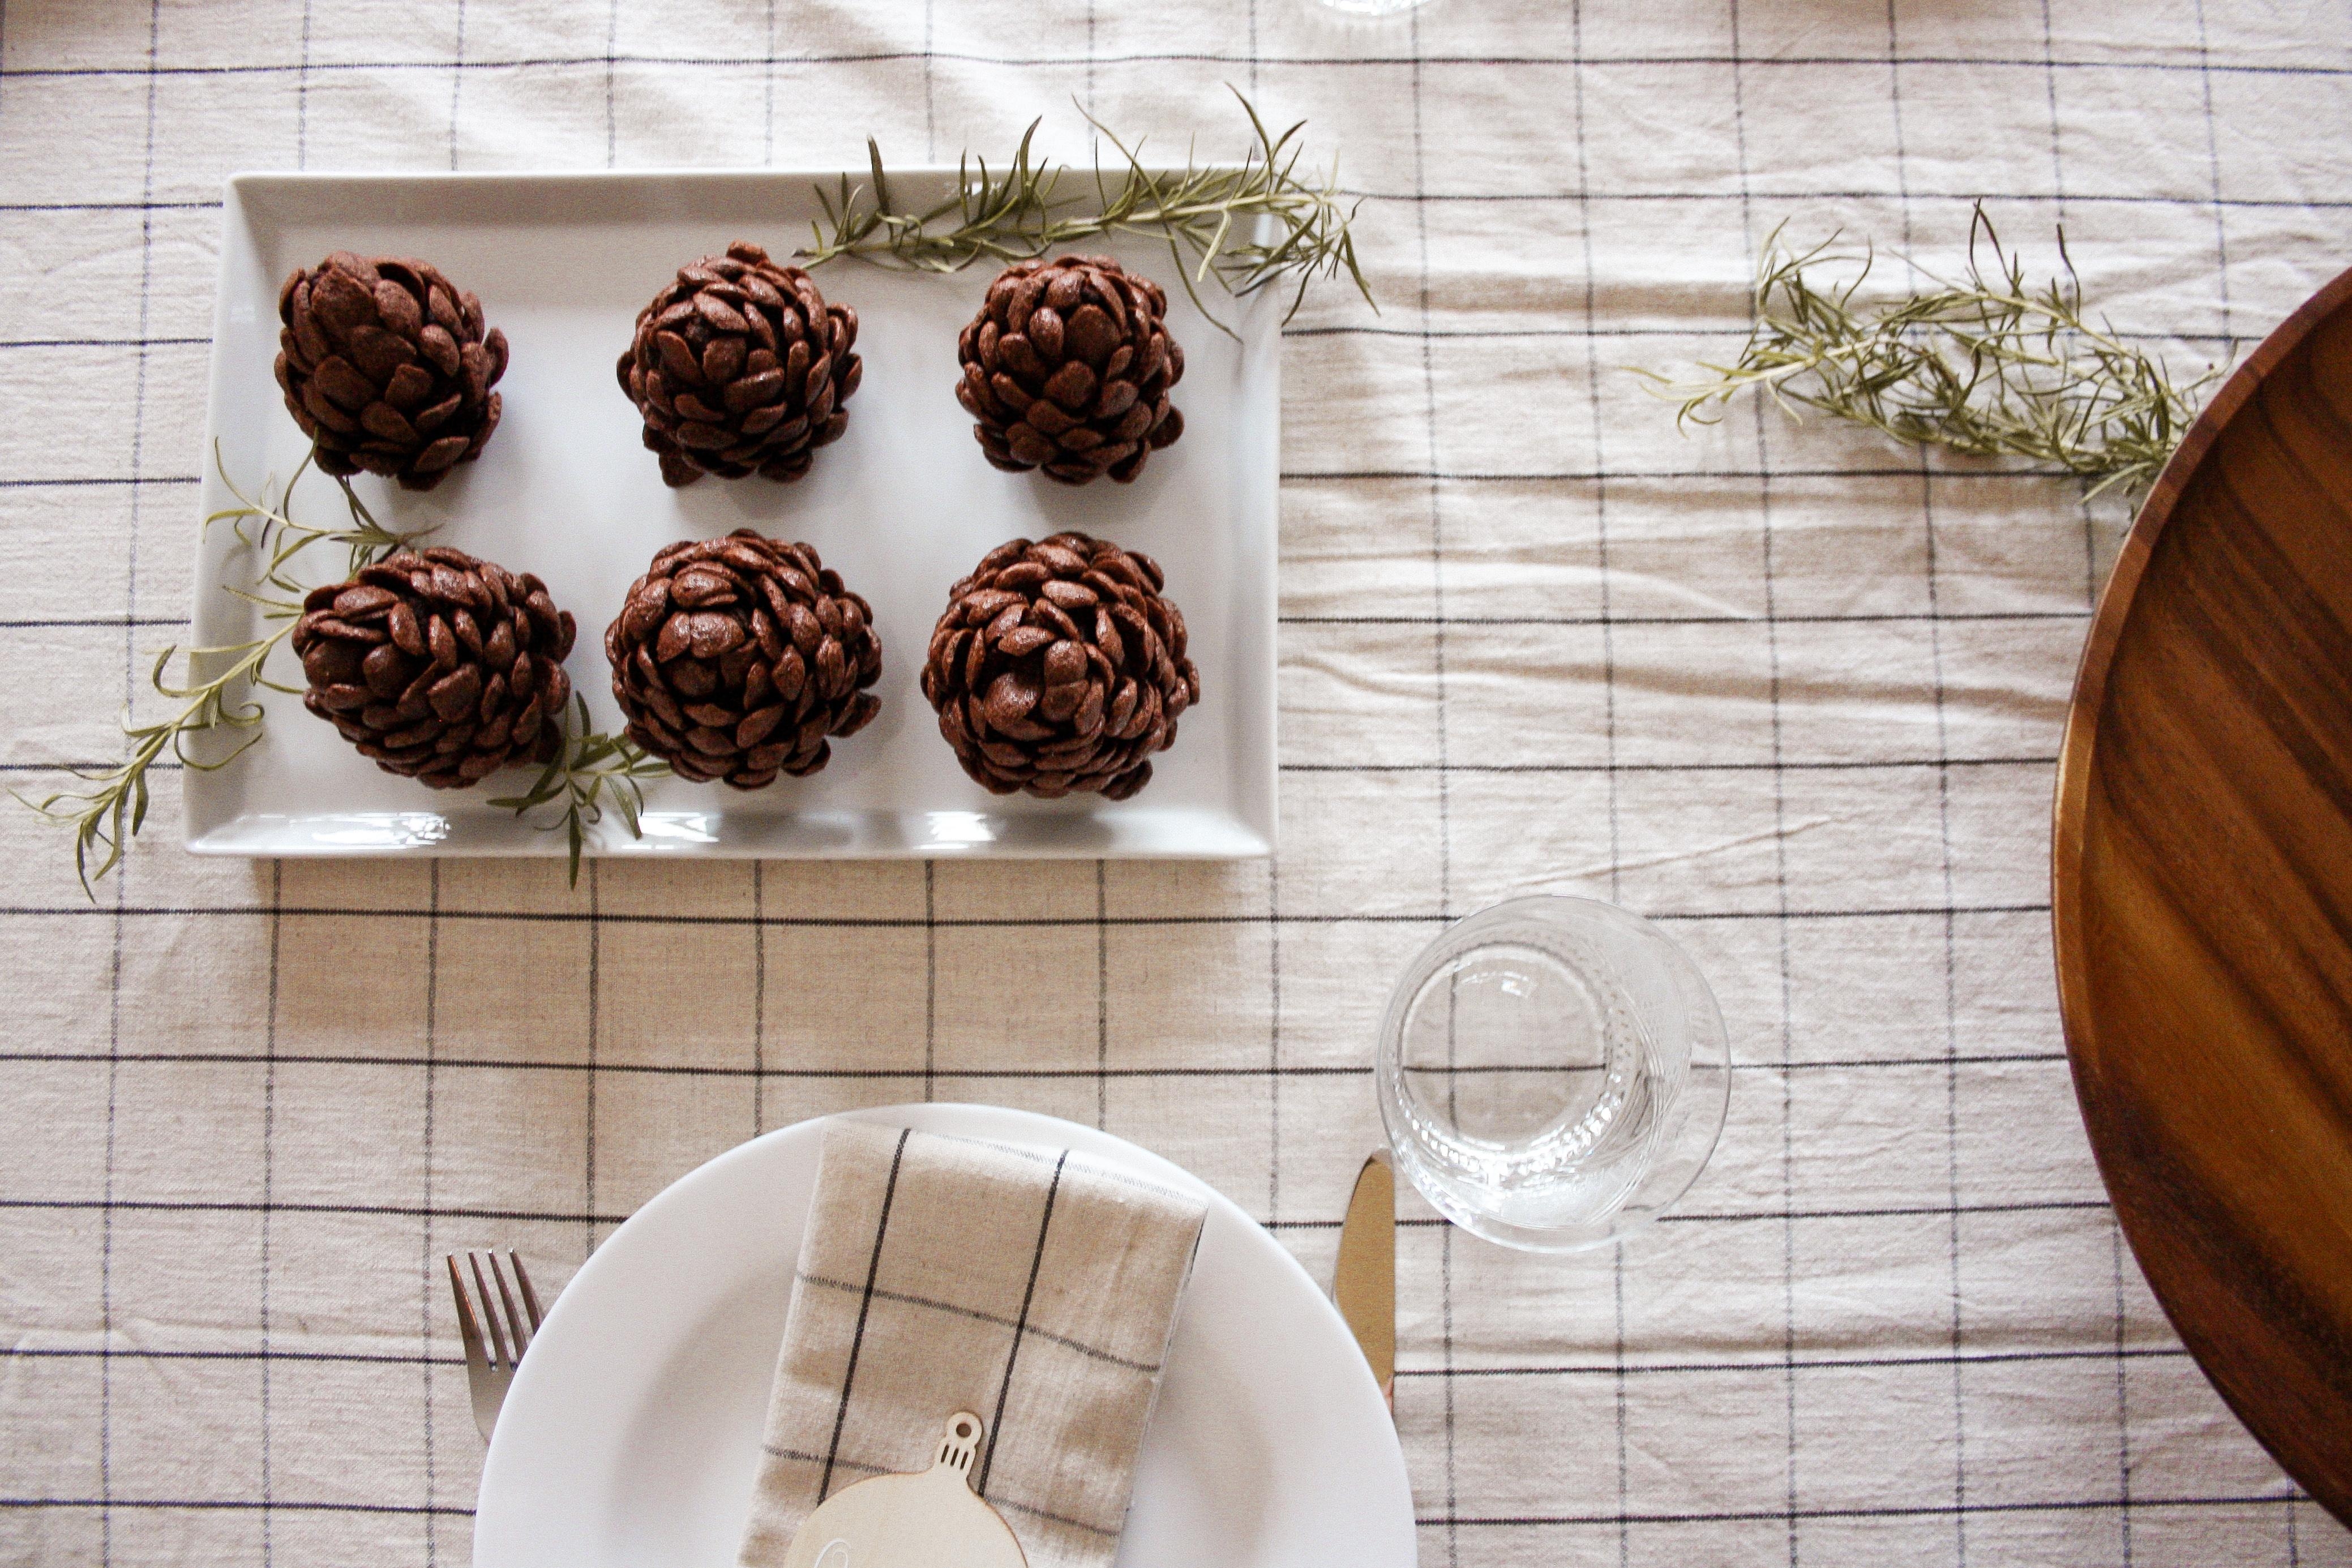 ♡ Essbare Tischdeko ♡
#cake #cakelover #food #backen #Kuchen #weihnachten #Tischdeko 